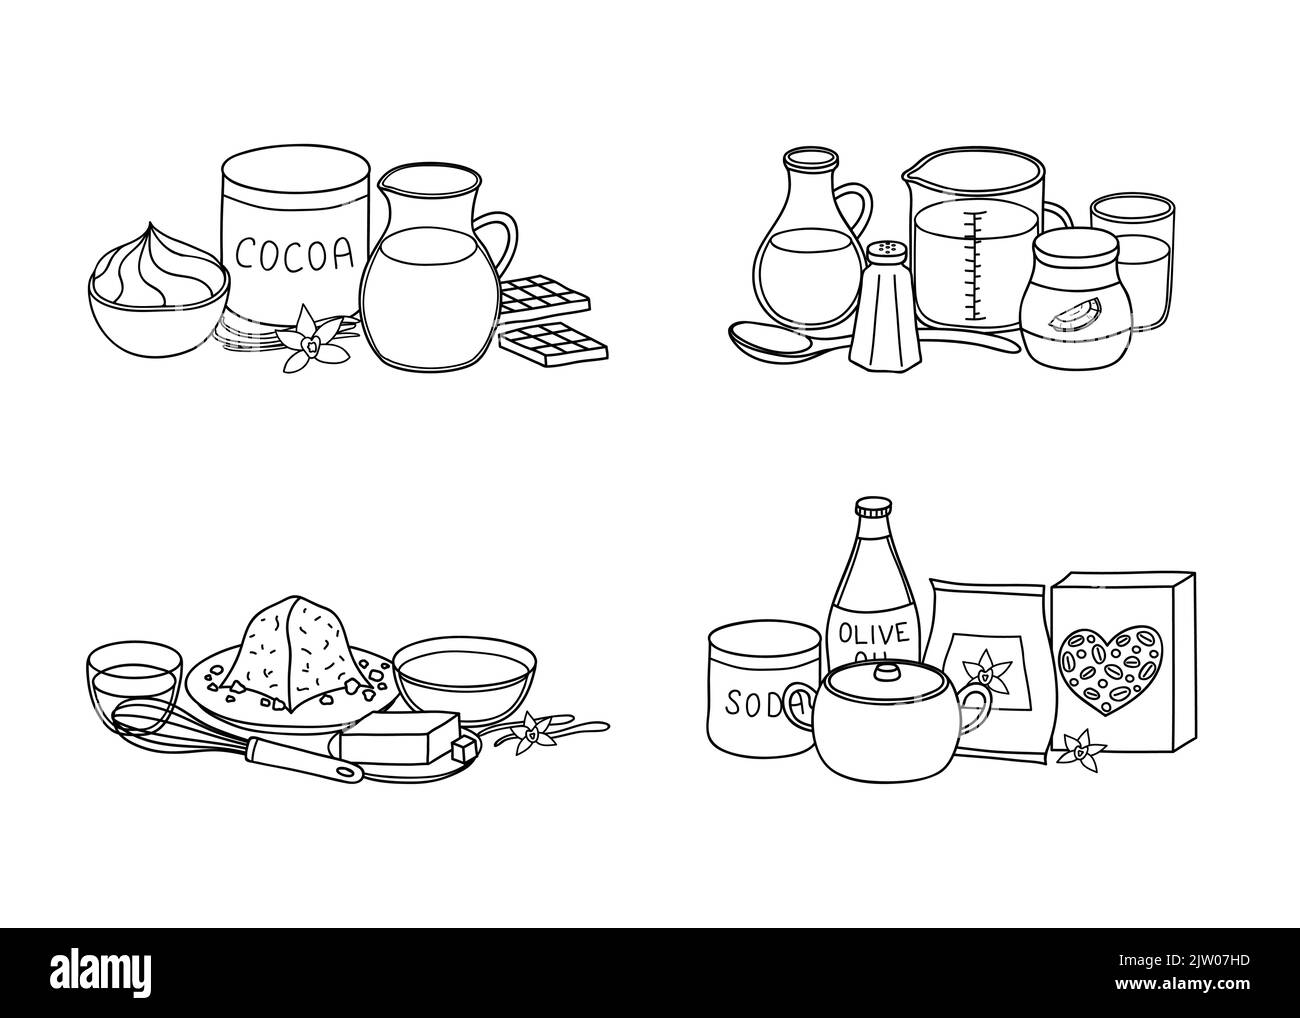 Gruppi di contorni disegnati a mano che cucinano, ingredienti di cottura isolati su fondo bianco. Illustrazione Vettoriale